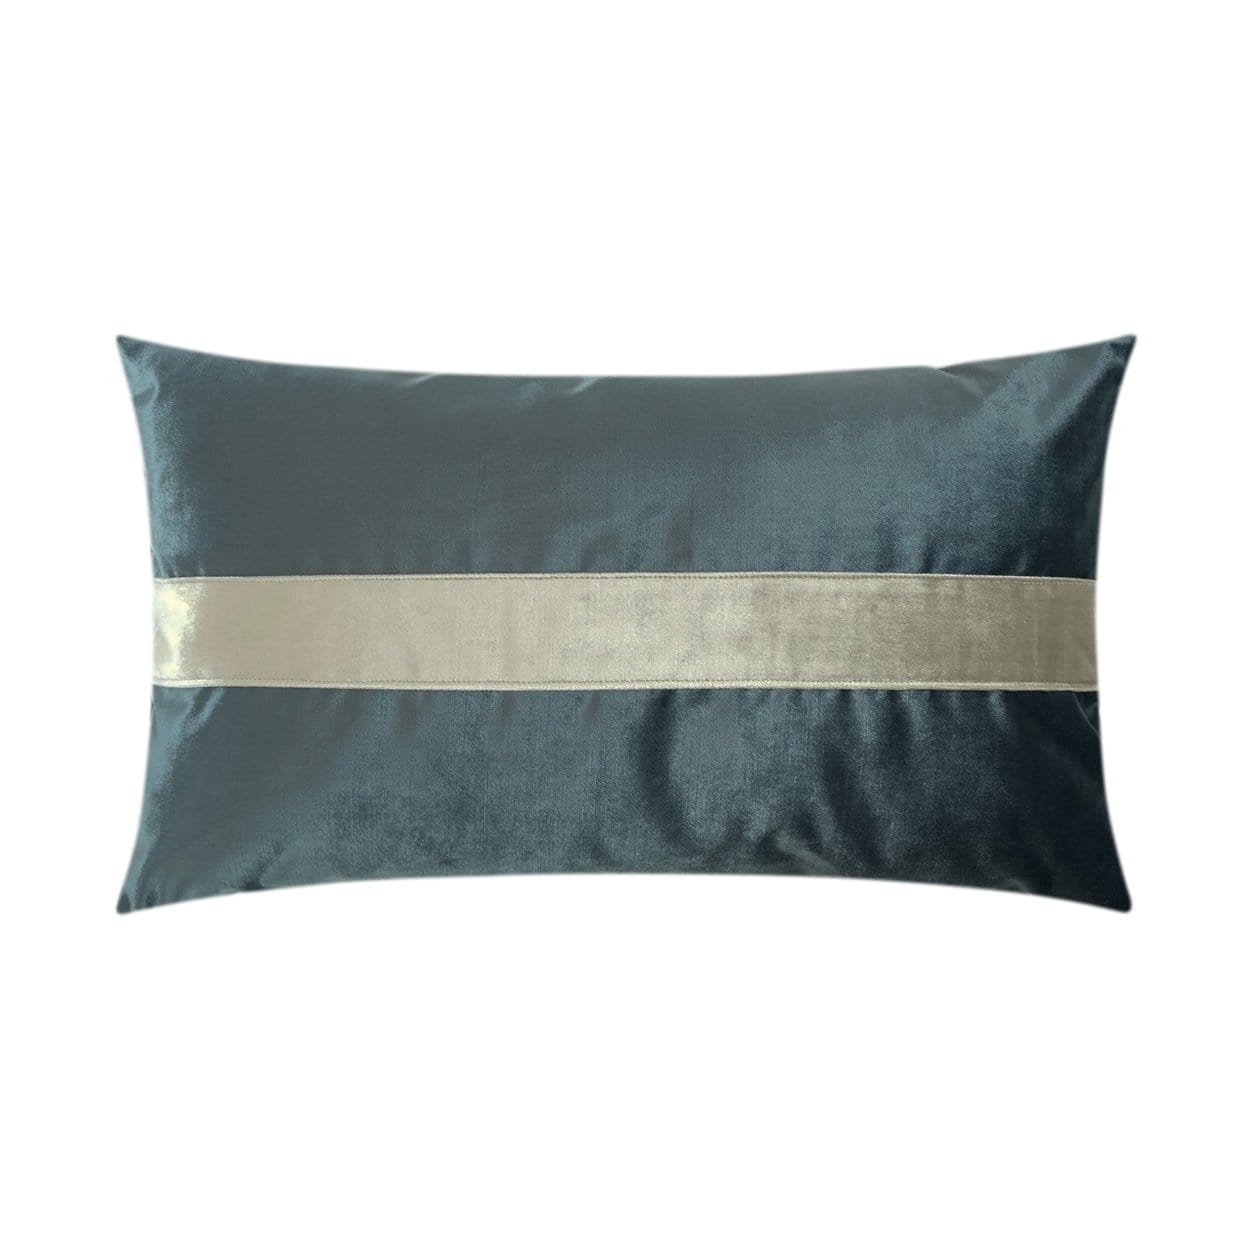 D.V. Kap D.V. Kap Iridescence Band Lumbar Pillow - Available in 8 Colors Baltic 3385-B